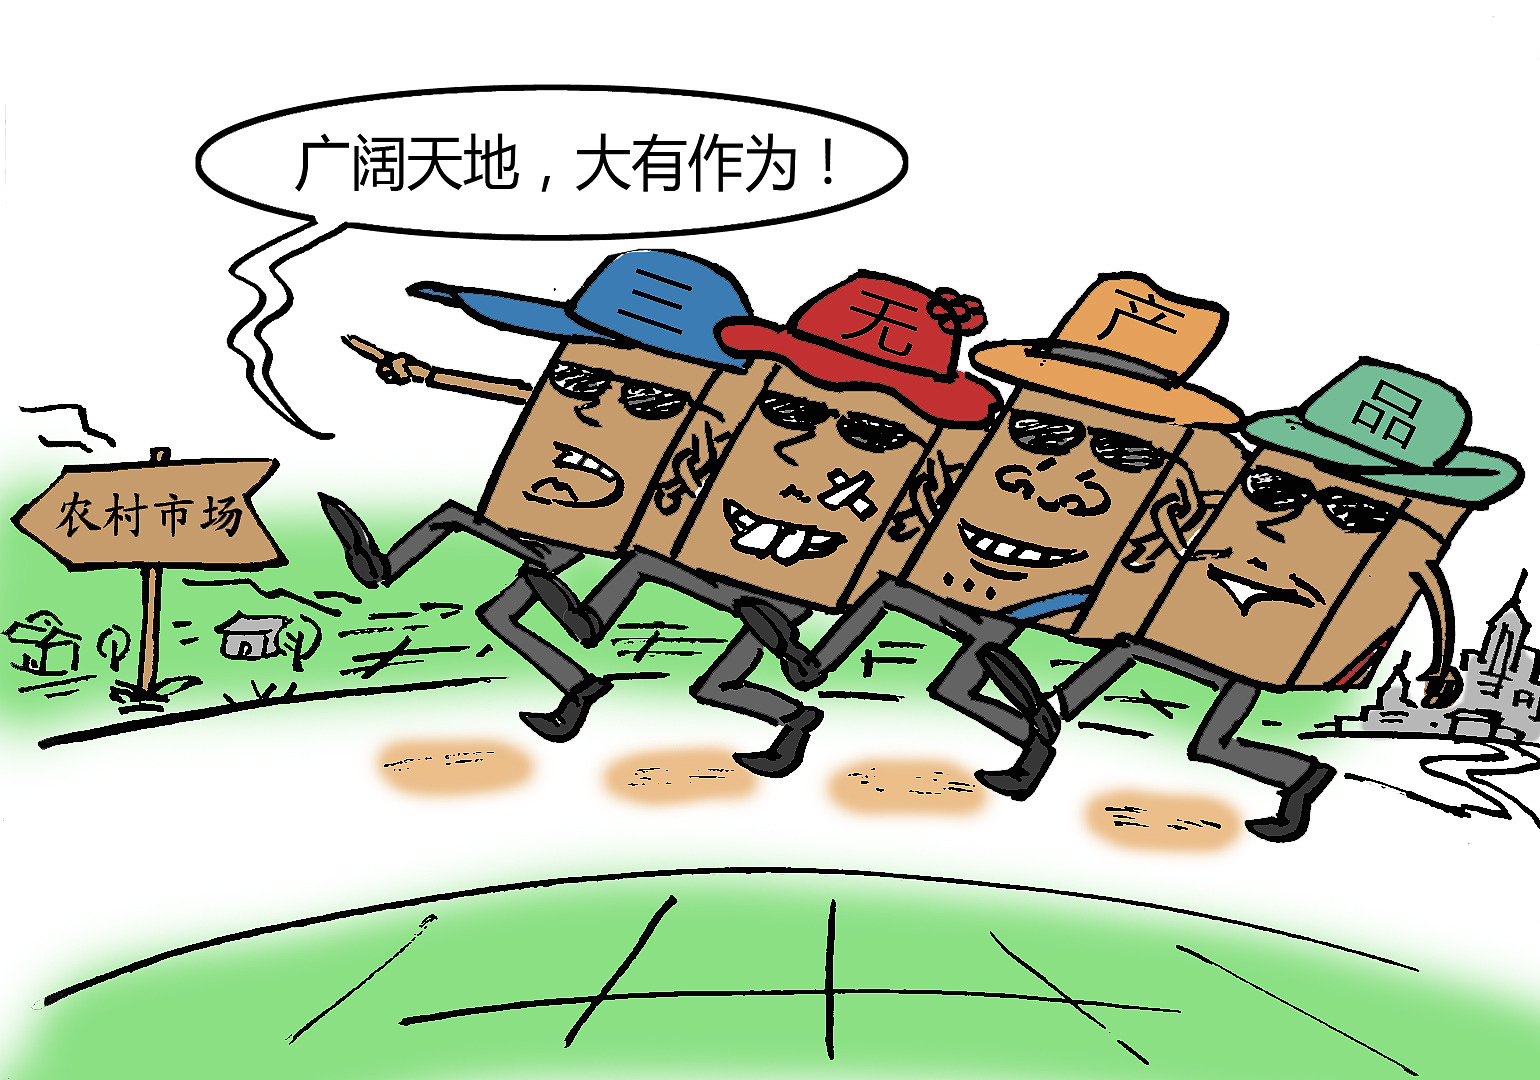 重拳出击 广东省公布打击农村假冒伪劣食品专项执法行动典型案例  